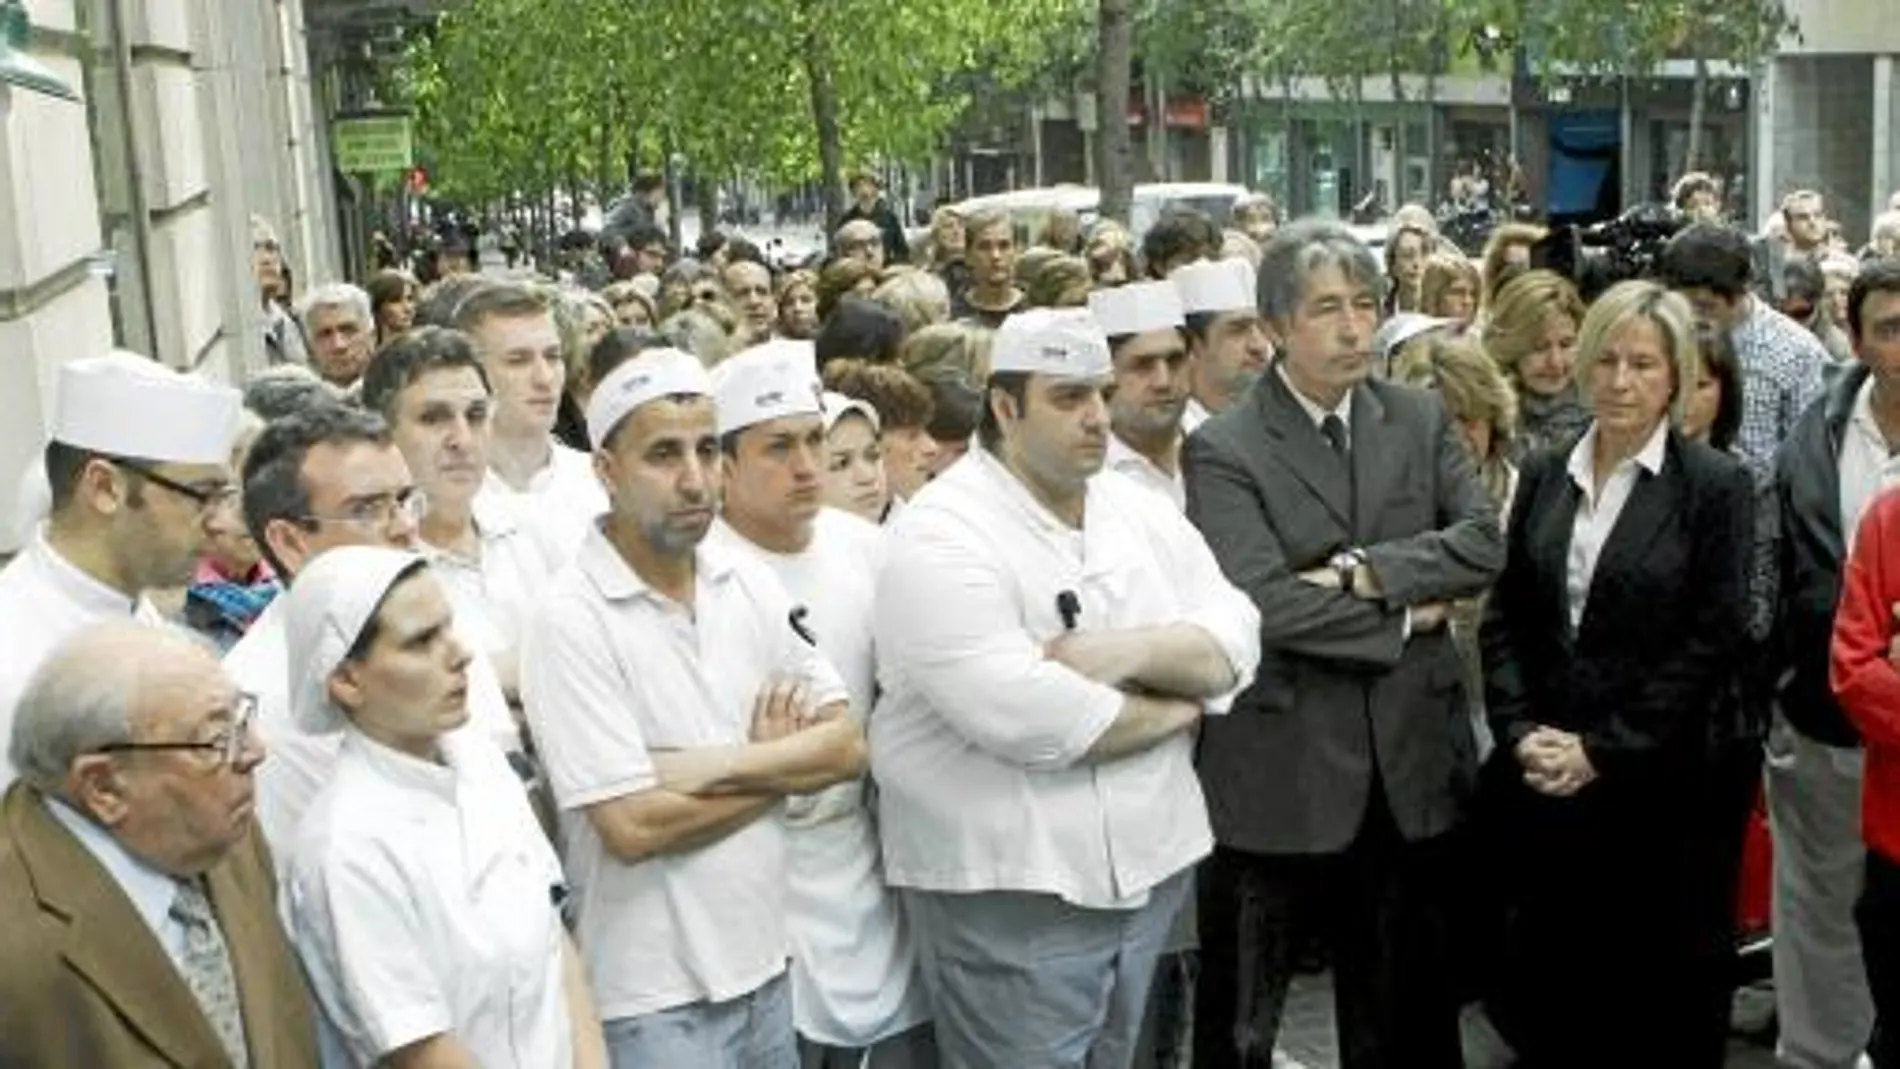 La concentración en la calle Muntaner, al lado de la panadería donde ocurrió el homicidio, sirvió para rendir homenaje a Merche Salas con cinco minutos de silencio